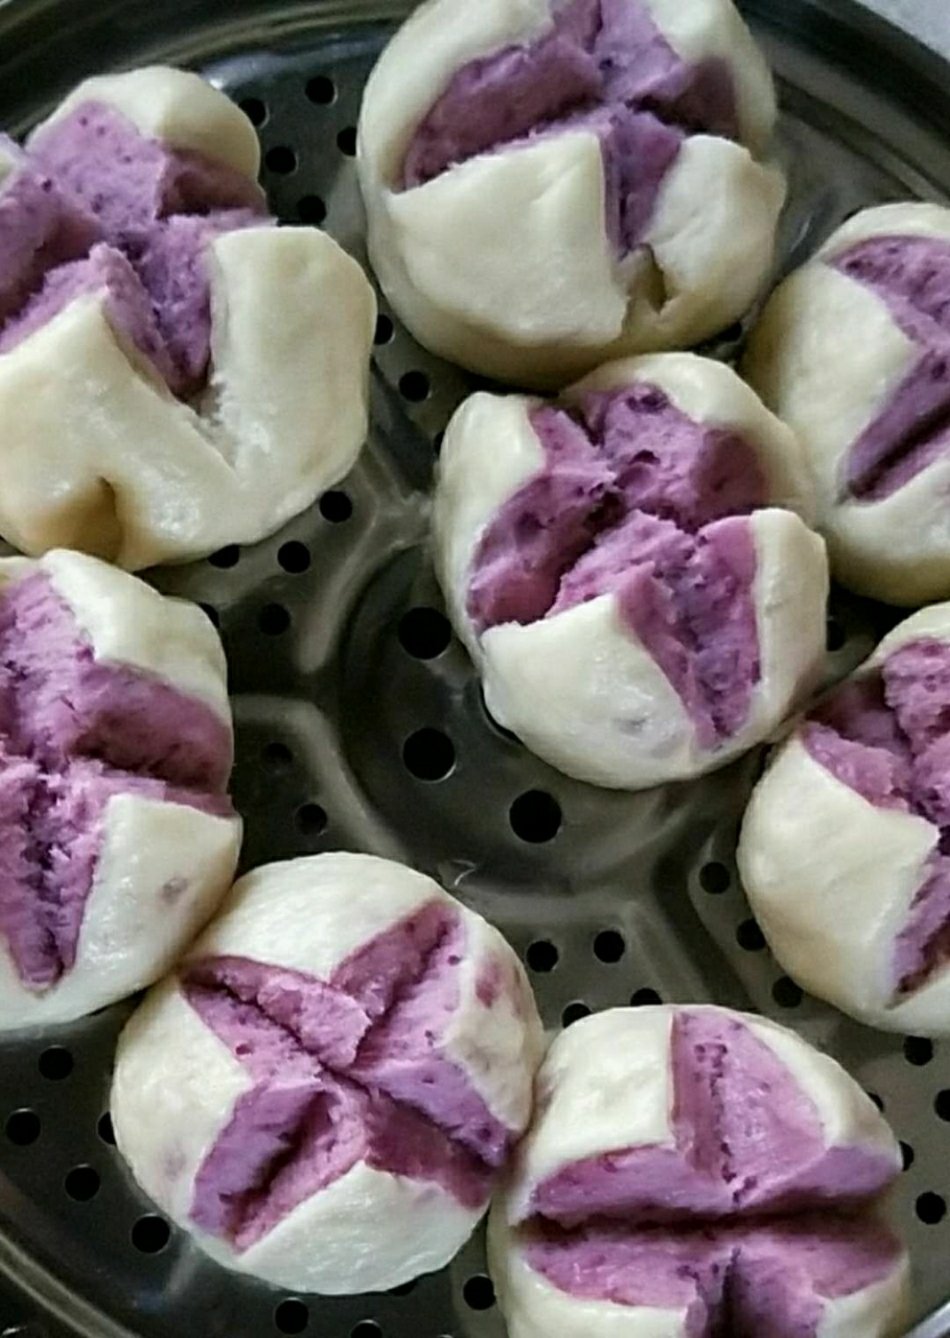 紫薯南瓜双色馒头图片